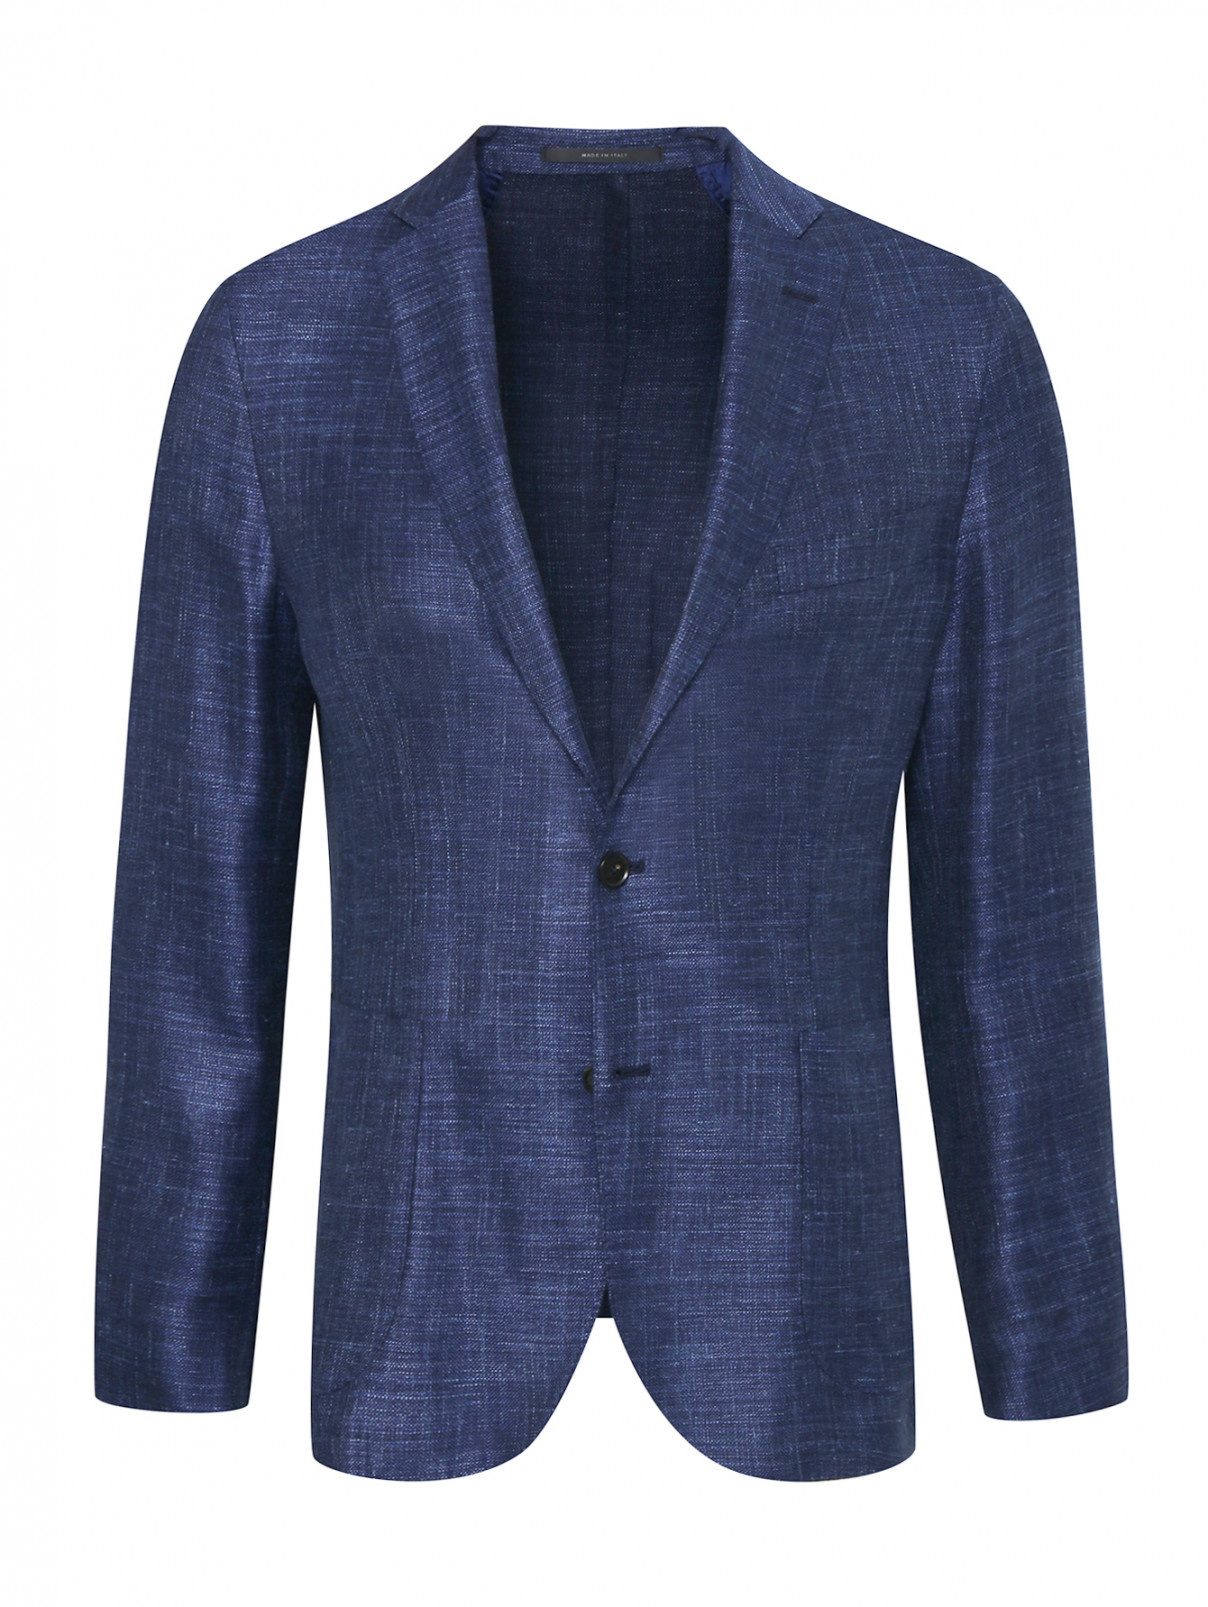 Пиджак из шелка и шерсти Pal Zileri  –  Общий вид  – Цвет:  Синий